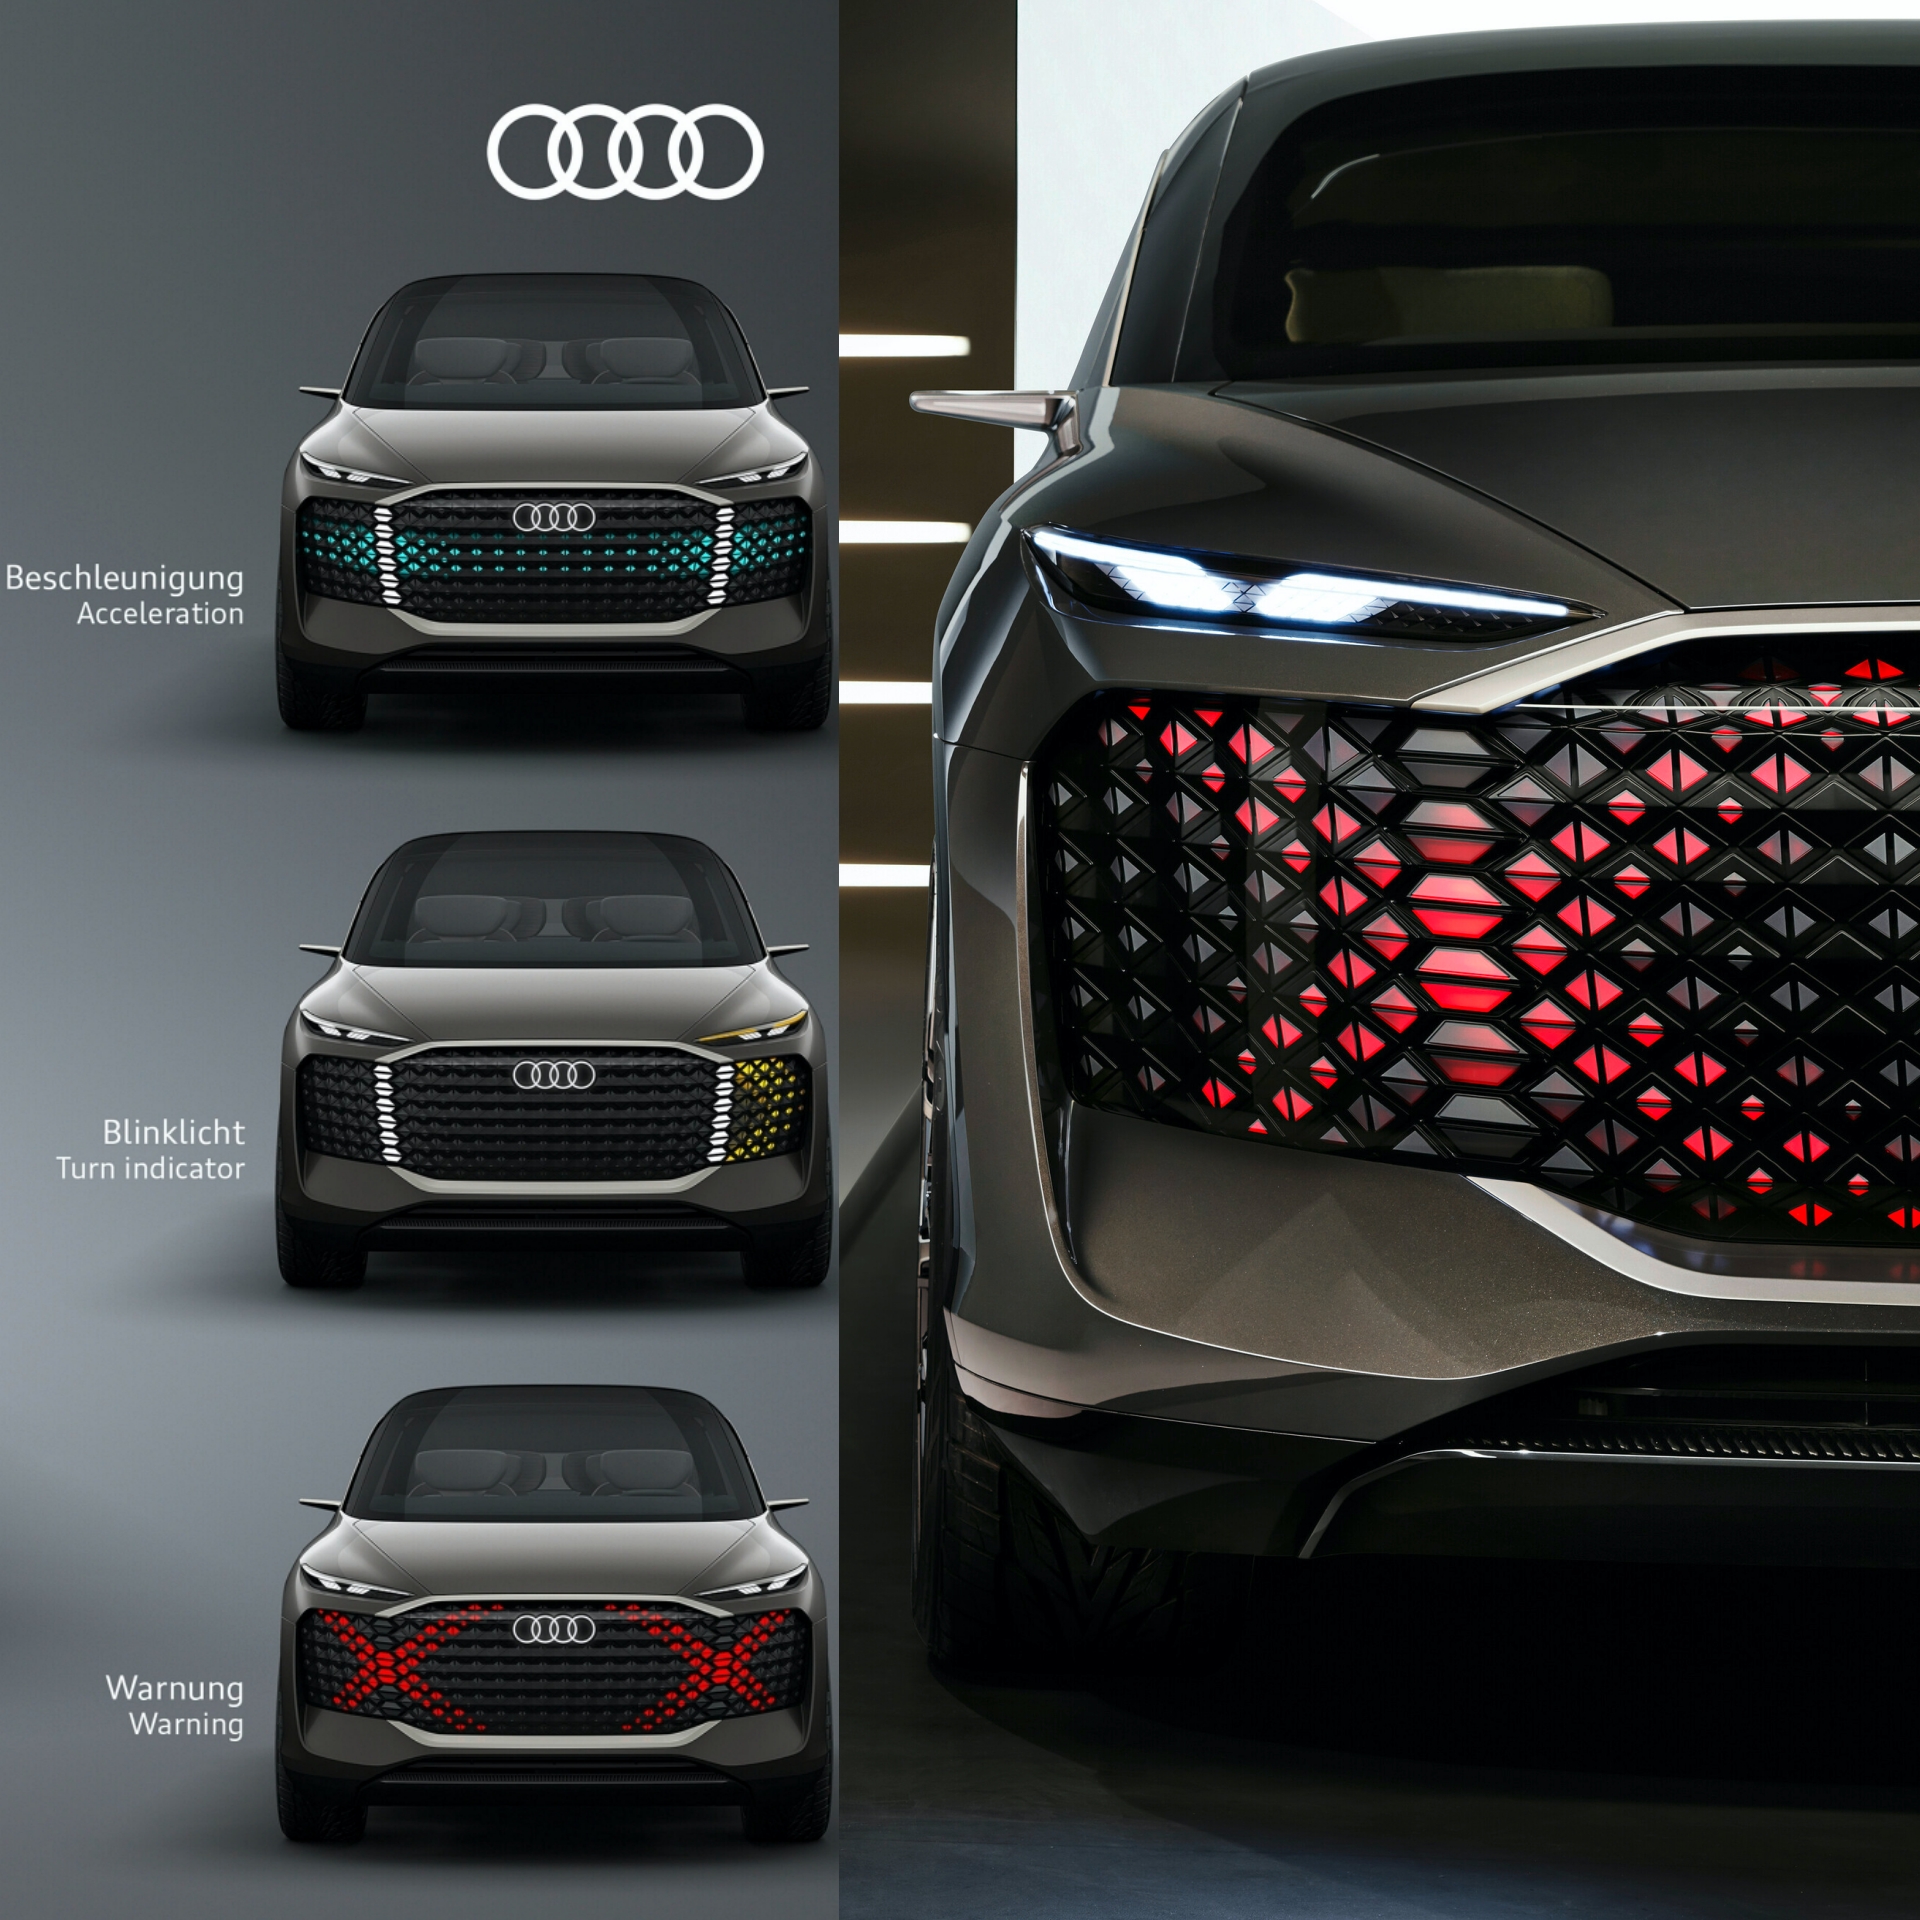 La parrilla del Audi Urbansphere hará las veces de pantalla para reflejar indicaciones.